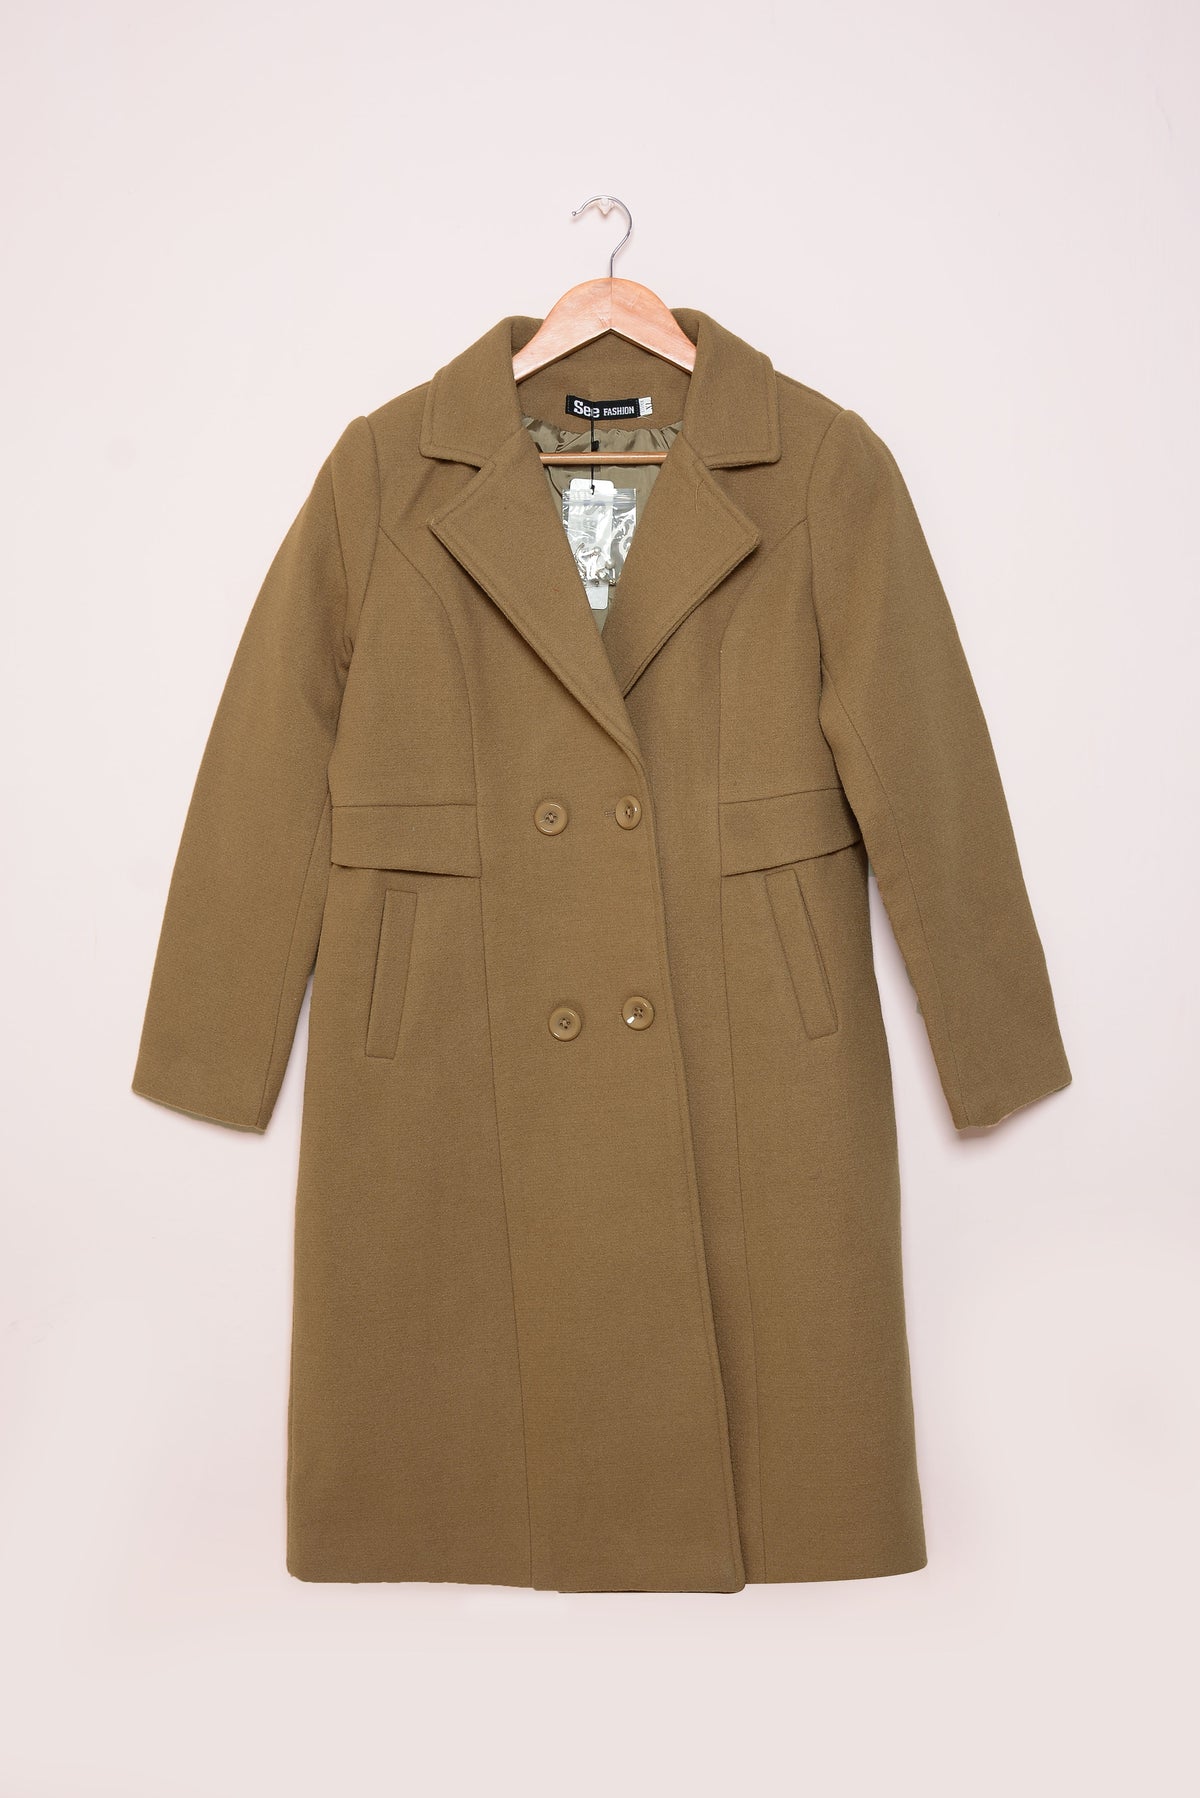 Ladies Winter Long Coats ykn-586 L-Brown